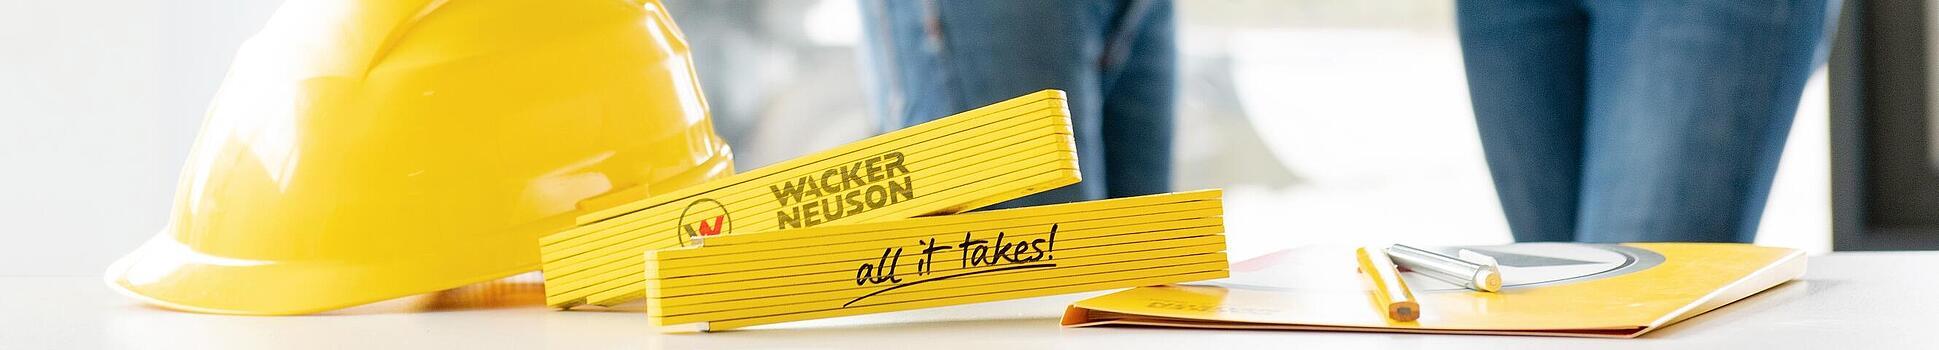 Wacker Neuson-merchandise op tafel op de voorgrond, Wacker Neuson-medewerkers op de achtergrond.